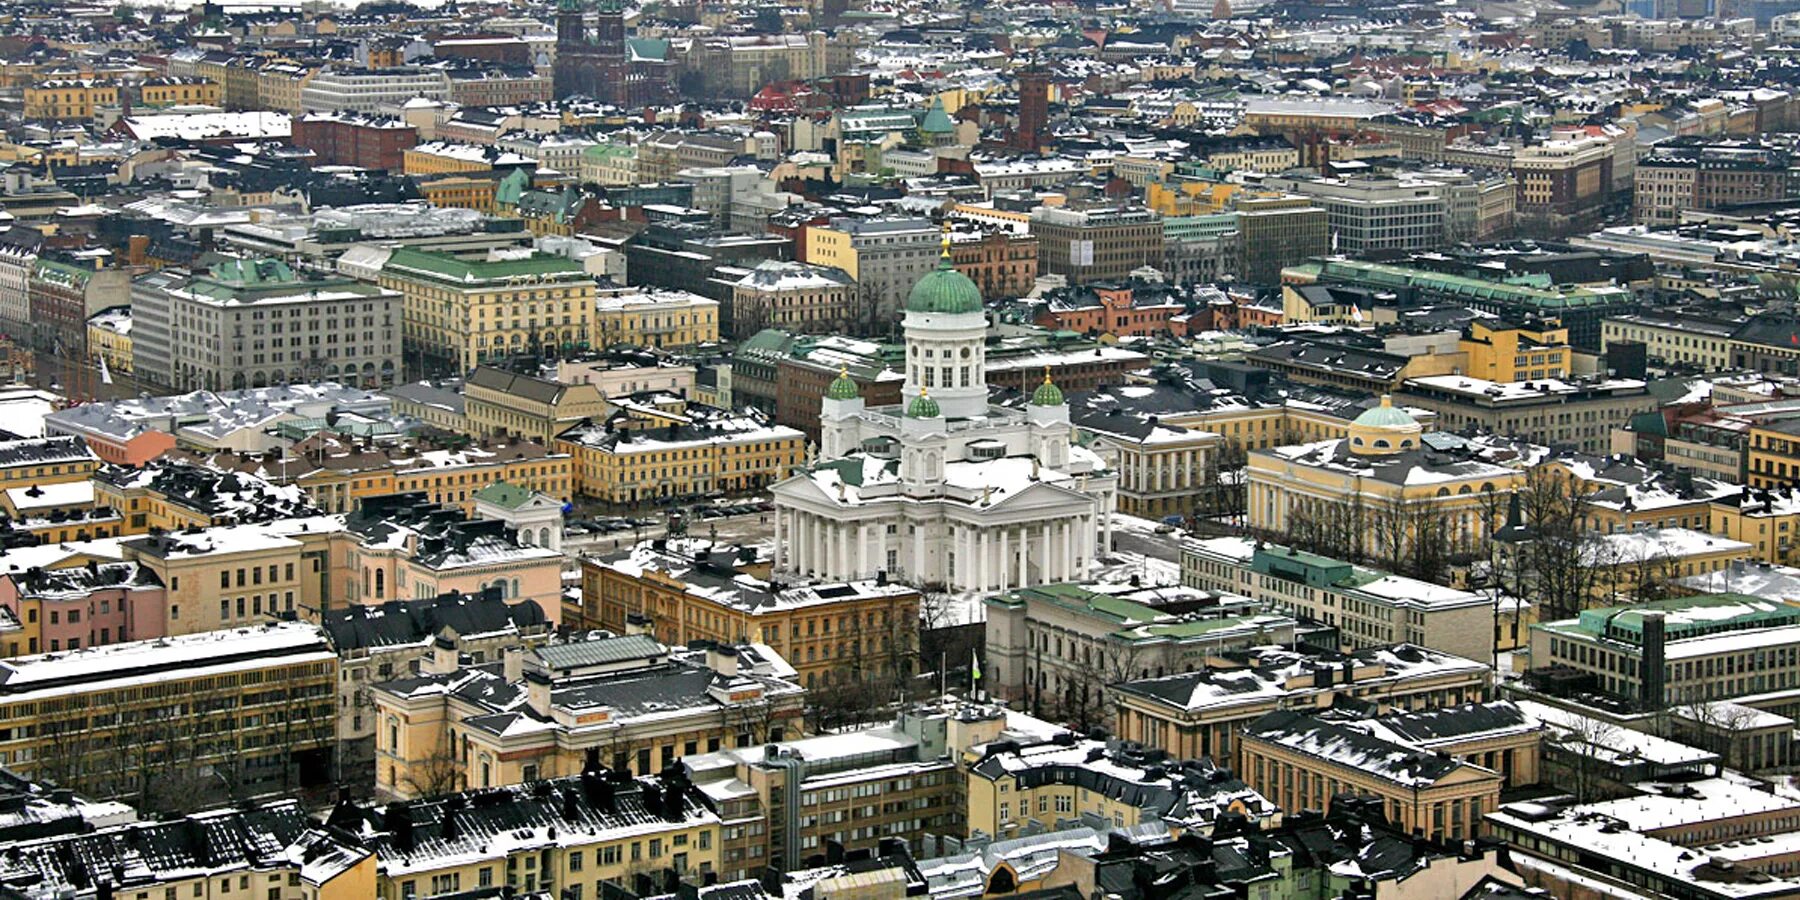 Хельсинки столица чего. Финляндия Хельсинки. Хельсинки столица. Столица Финляндии город Хельсинки. Хельсинки столица Финляндии достопримечательности.